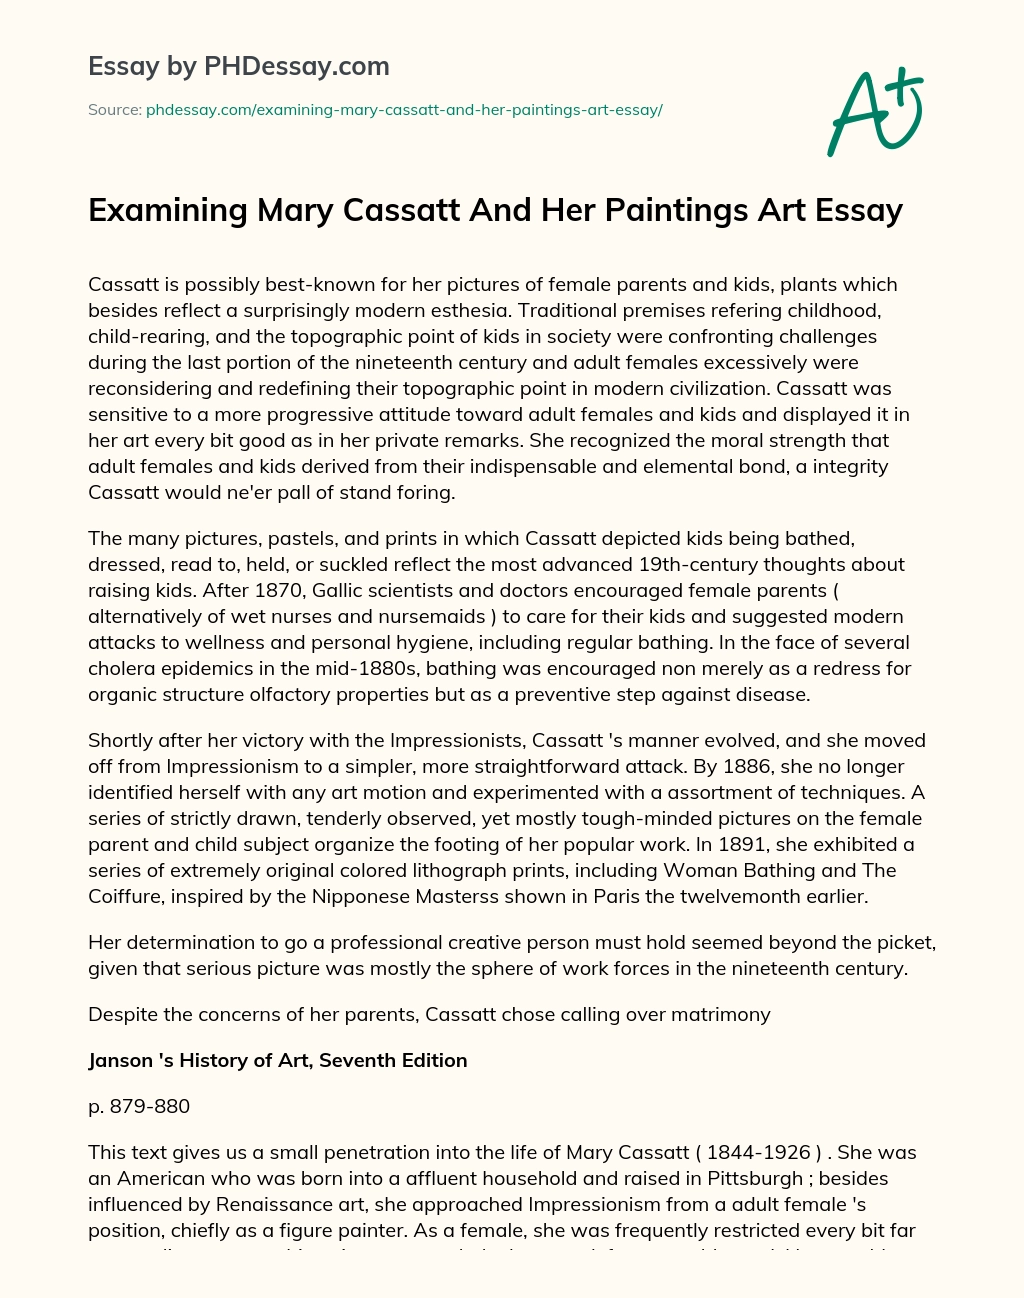 Examining Mary Cassatt And Her Paintings Art Essay essay